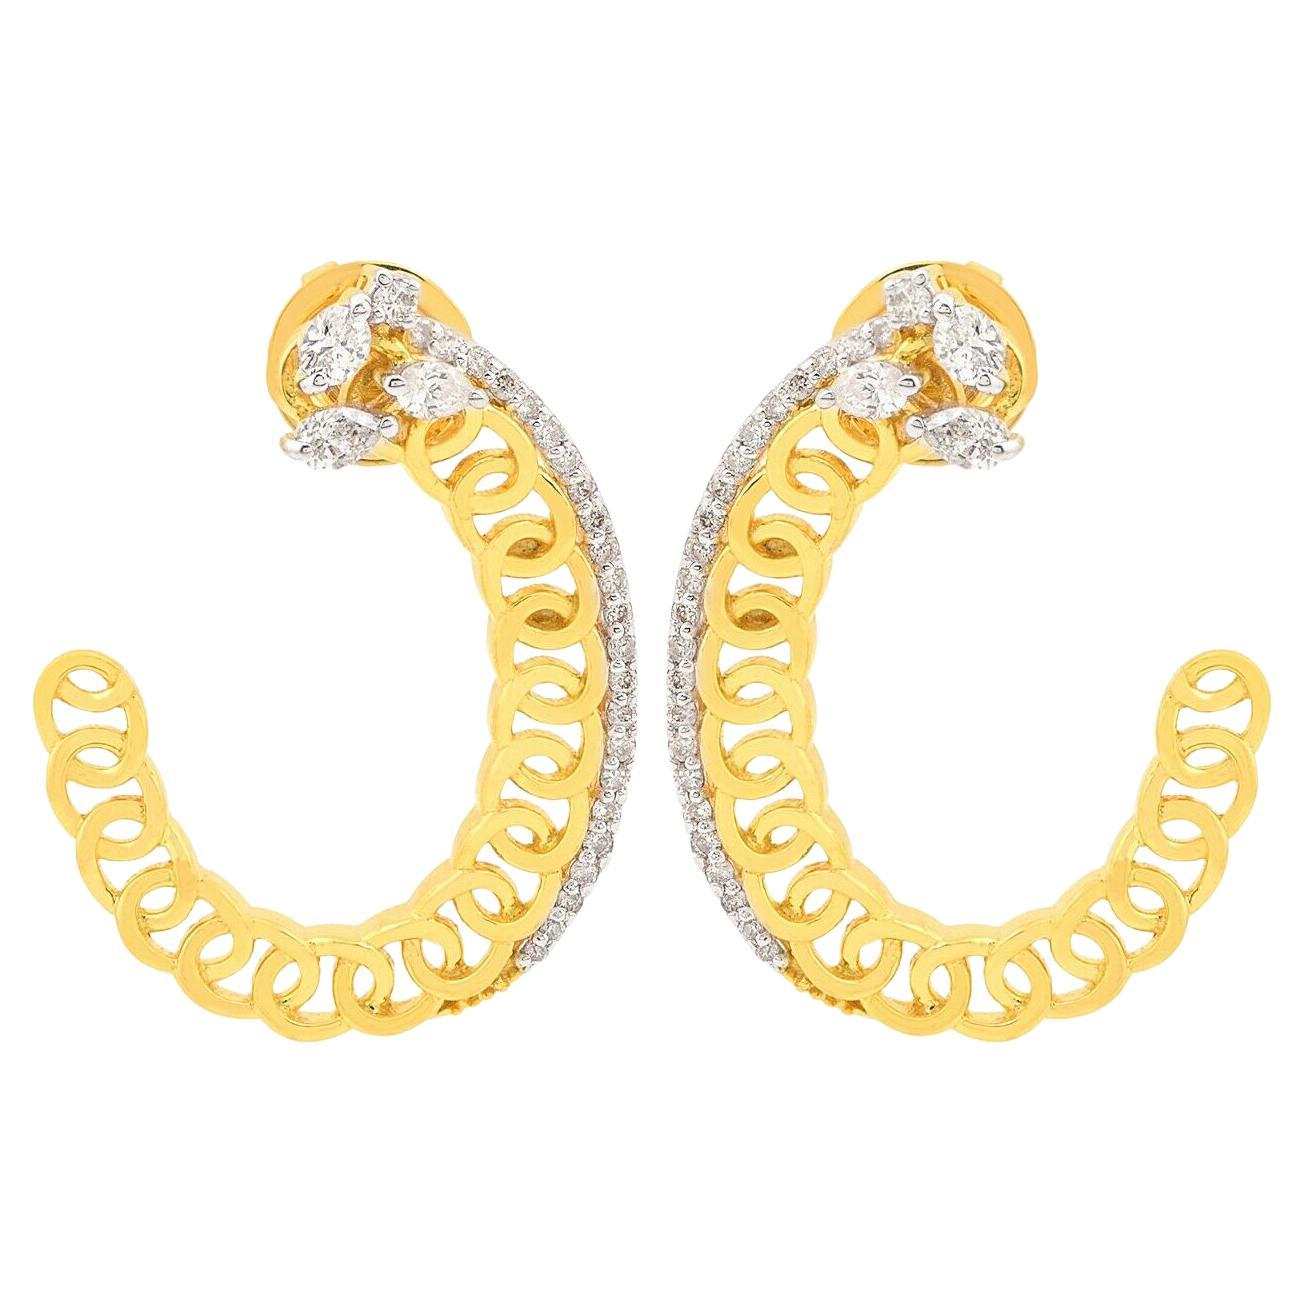 Sine Hoop Earrings in Gold & Tourmaline